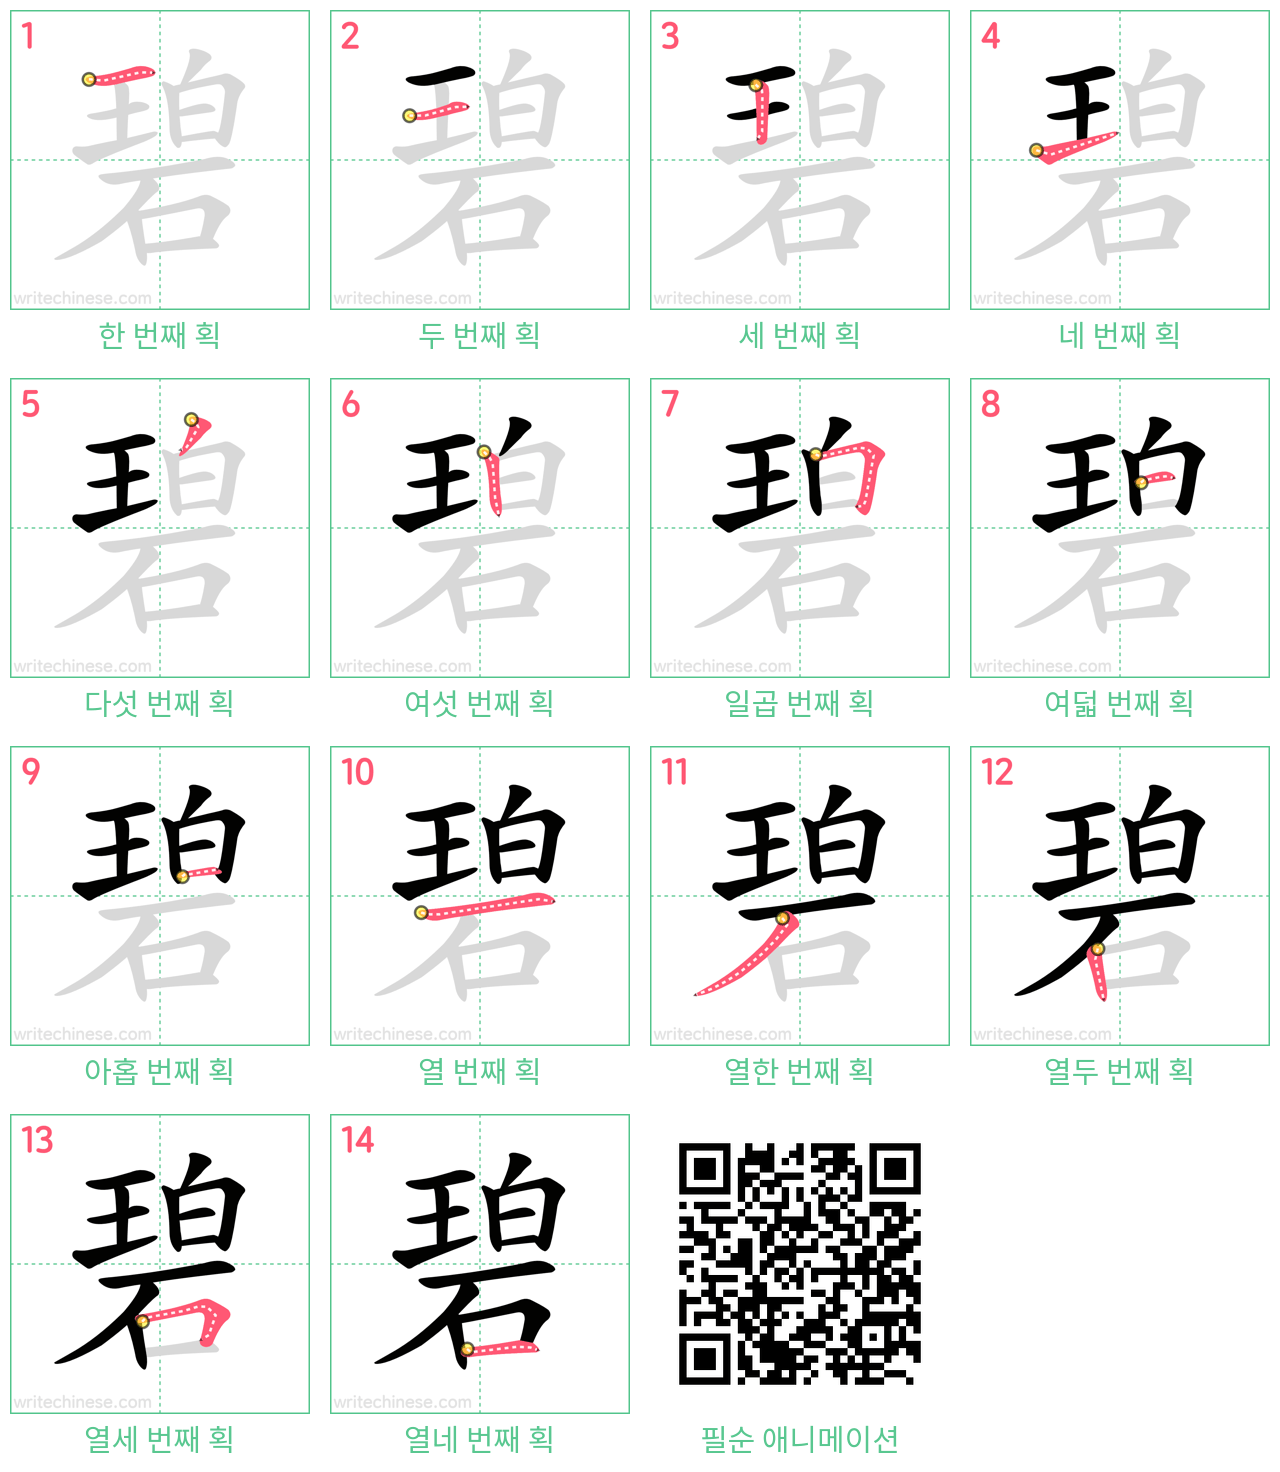 碧 step-by-step stroke order diagrams